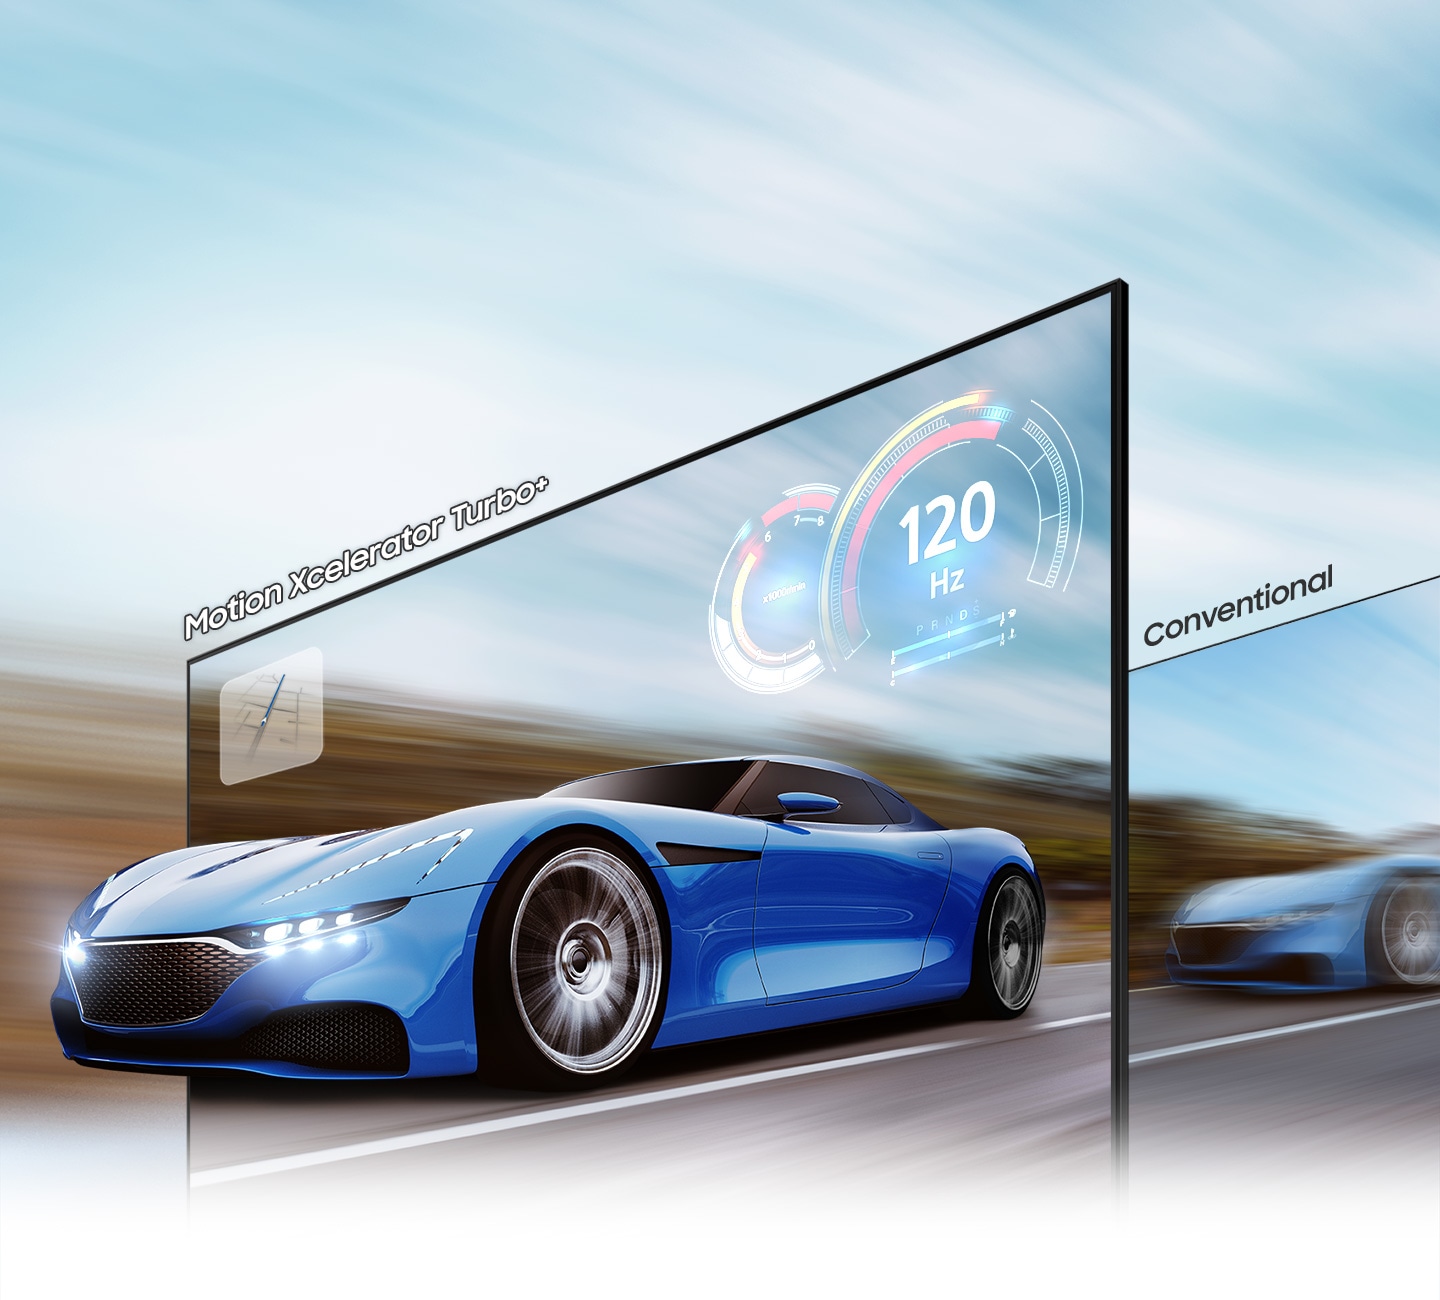 Zaradi tehnologije motion xcelerator turbo+ do 4K 120Hz je dirkalni avtomobil na TV zaslonu videti jasnejše in bolj vidno na televizorju QLED kot na običajnem televizorju.